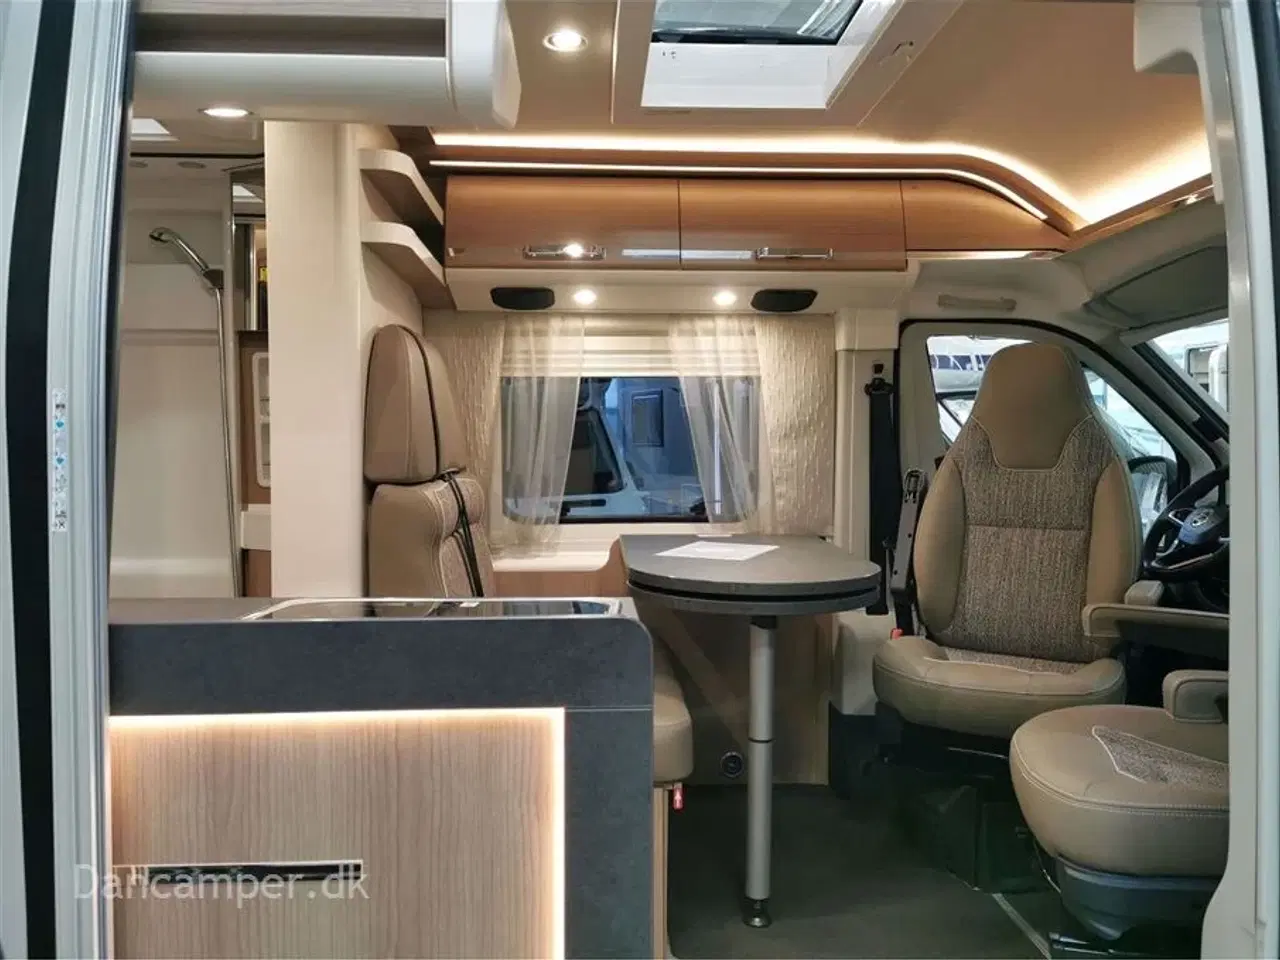 Billede 3 - 2022 - Carthago can Charming 600 DB   Luksus rejsevogn på under 6 meter, Træk til 3000Kg, 140Hk, 9 trins automatgear og masser af udstyr